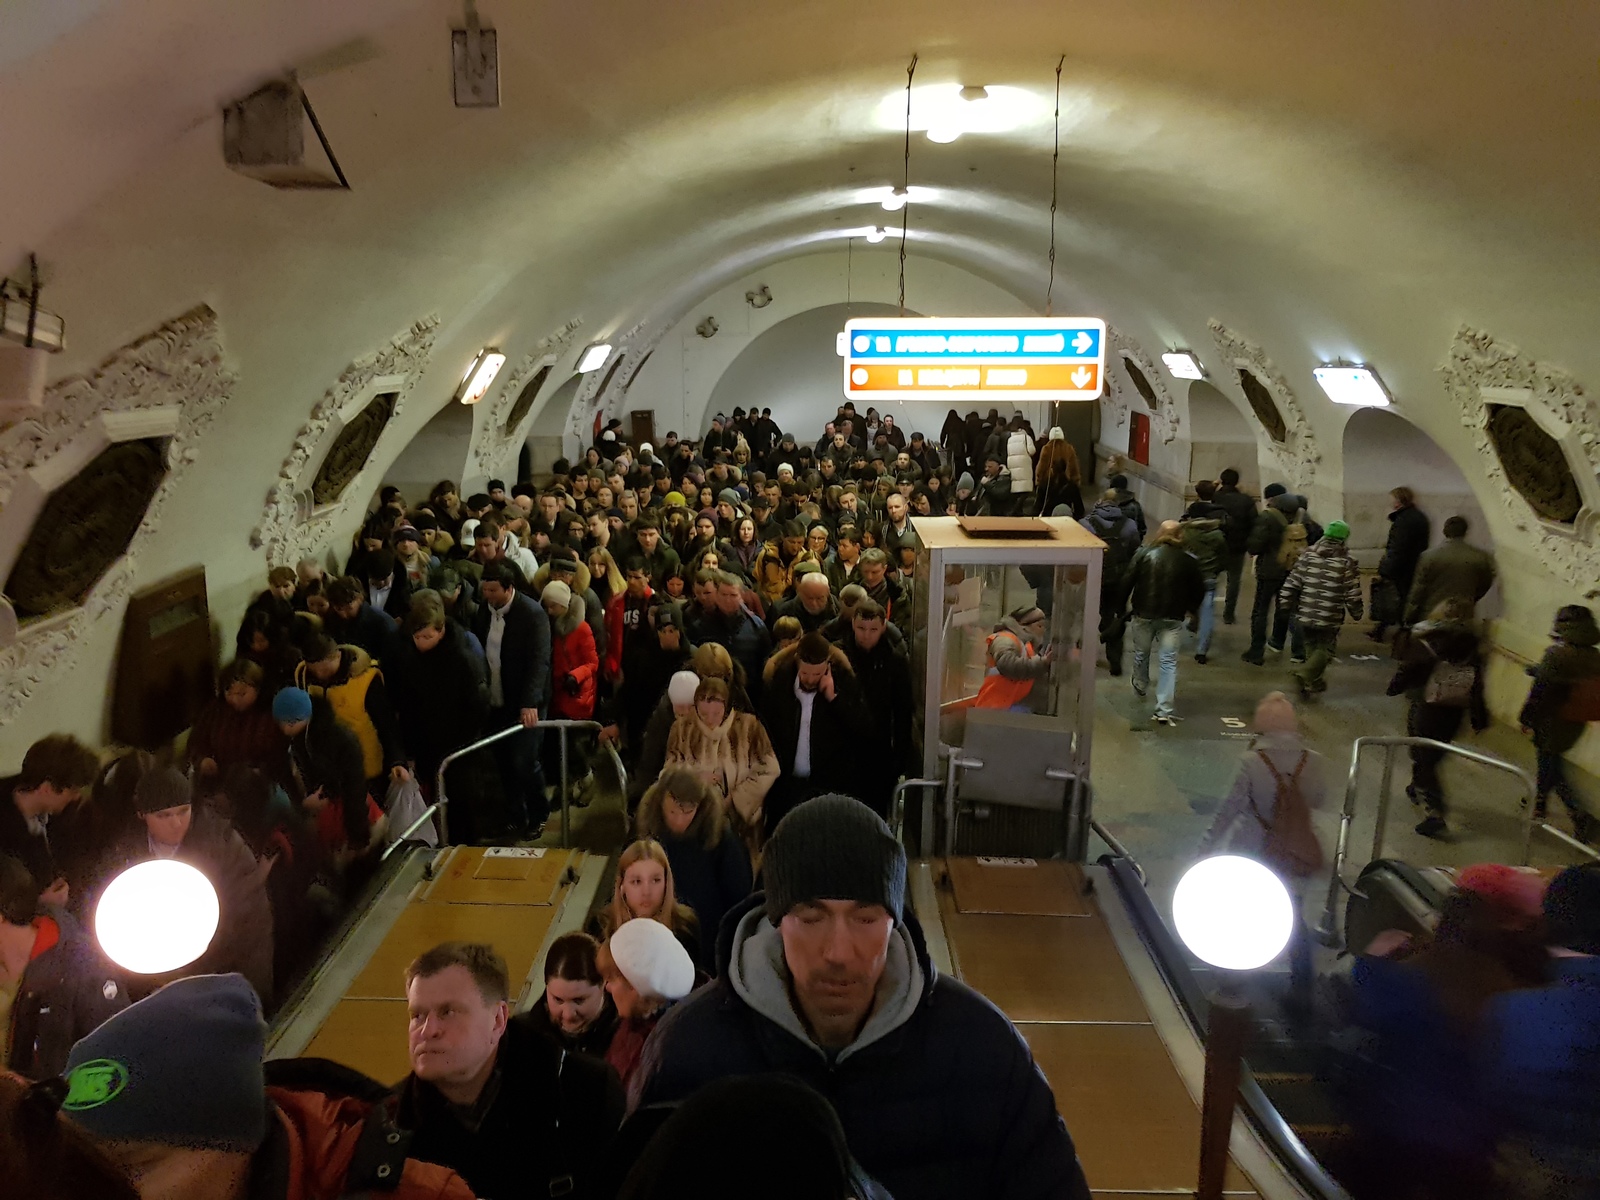 Kyiv metro station. - My, Metro, Excursion, Kievskaya metro station, Moscow, Longpost